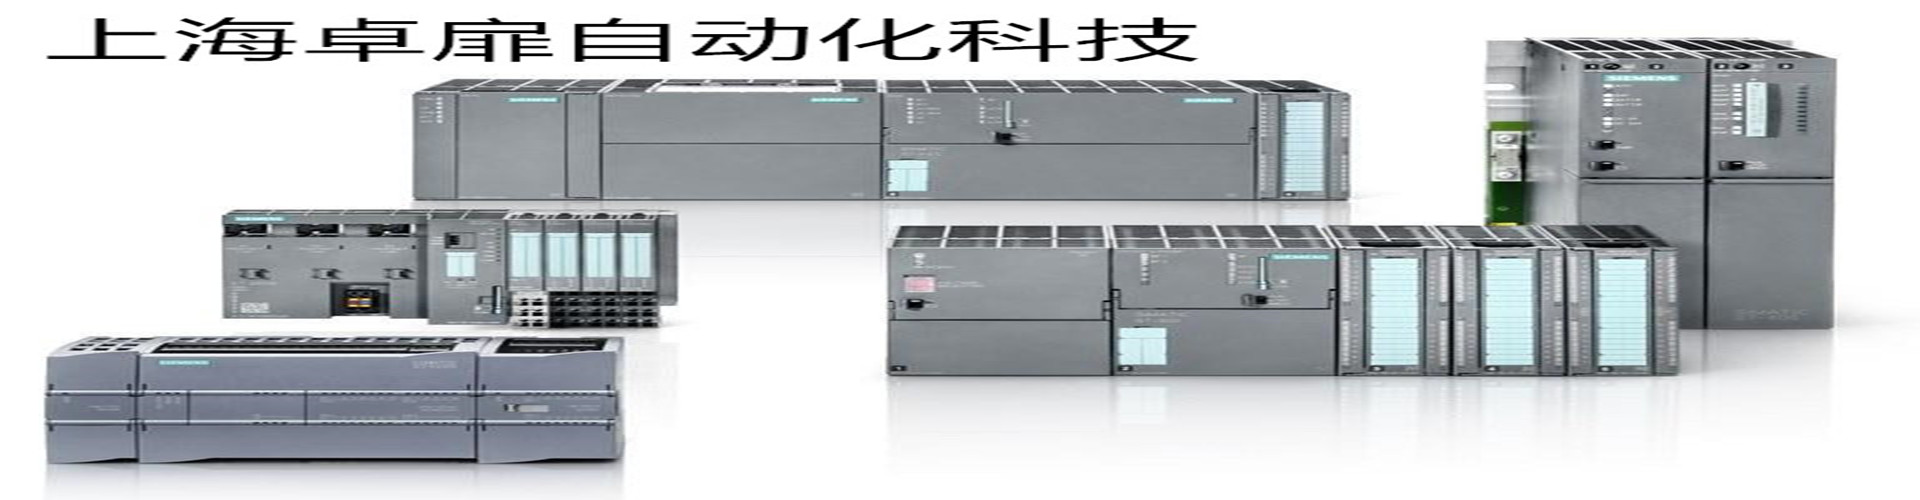 濮阳西门子S7-300.400PLC模块代理商